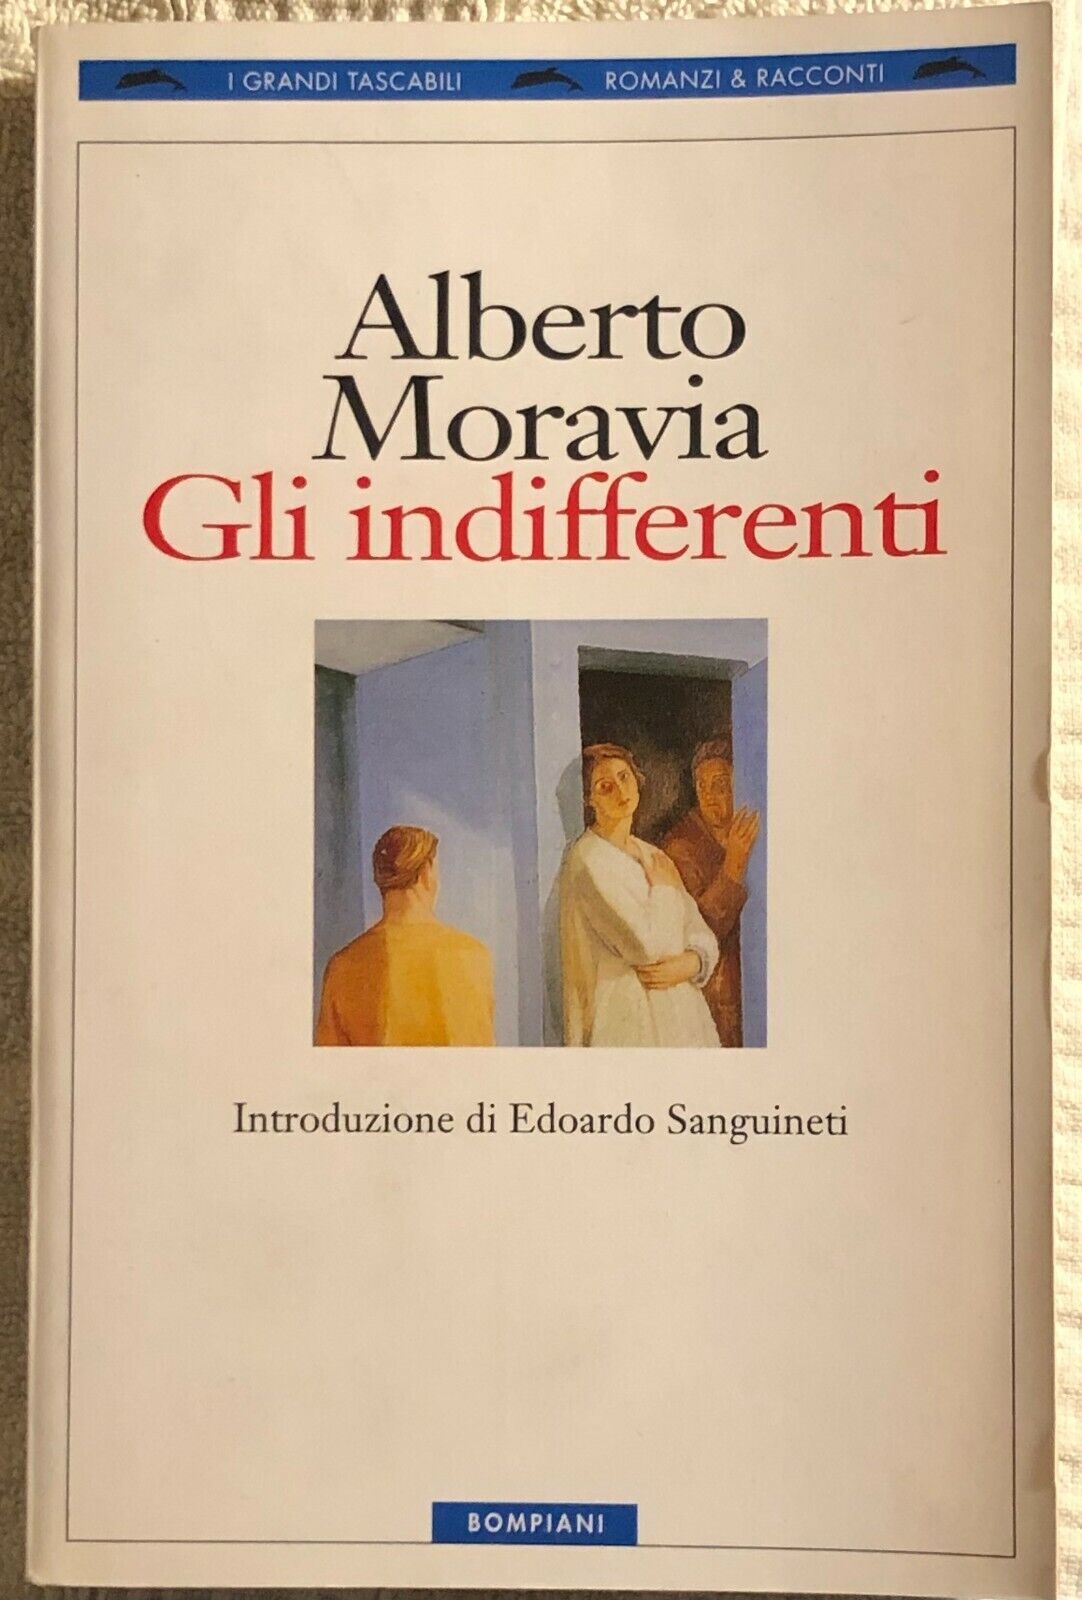 Gli indifferenti di Alberto Moravia, Edoardo Sanguineti,  1998,  Bompiani